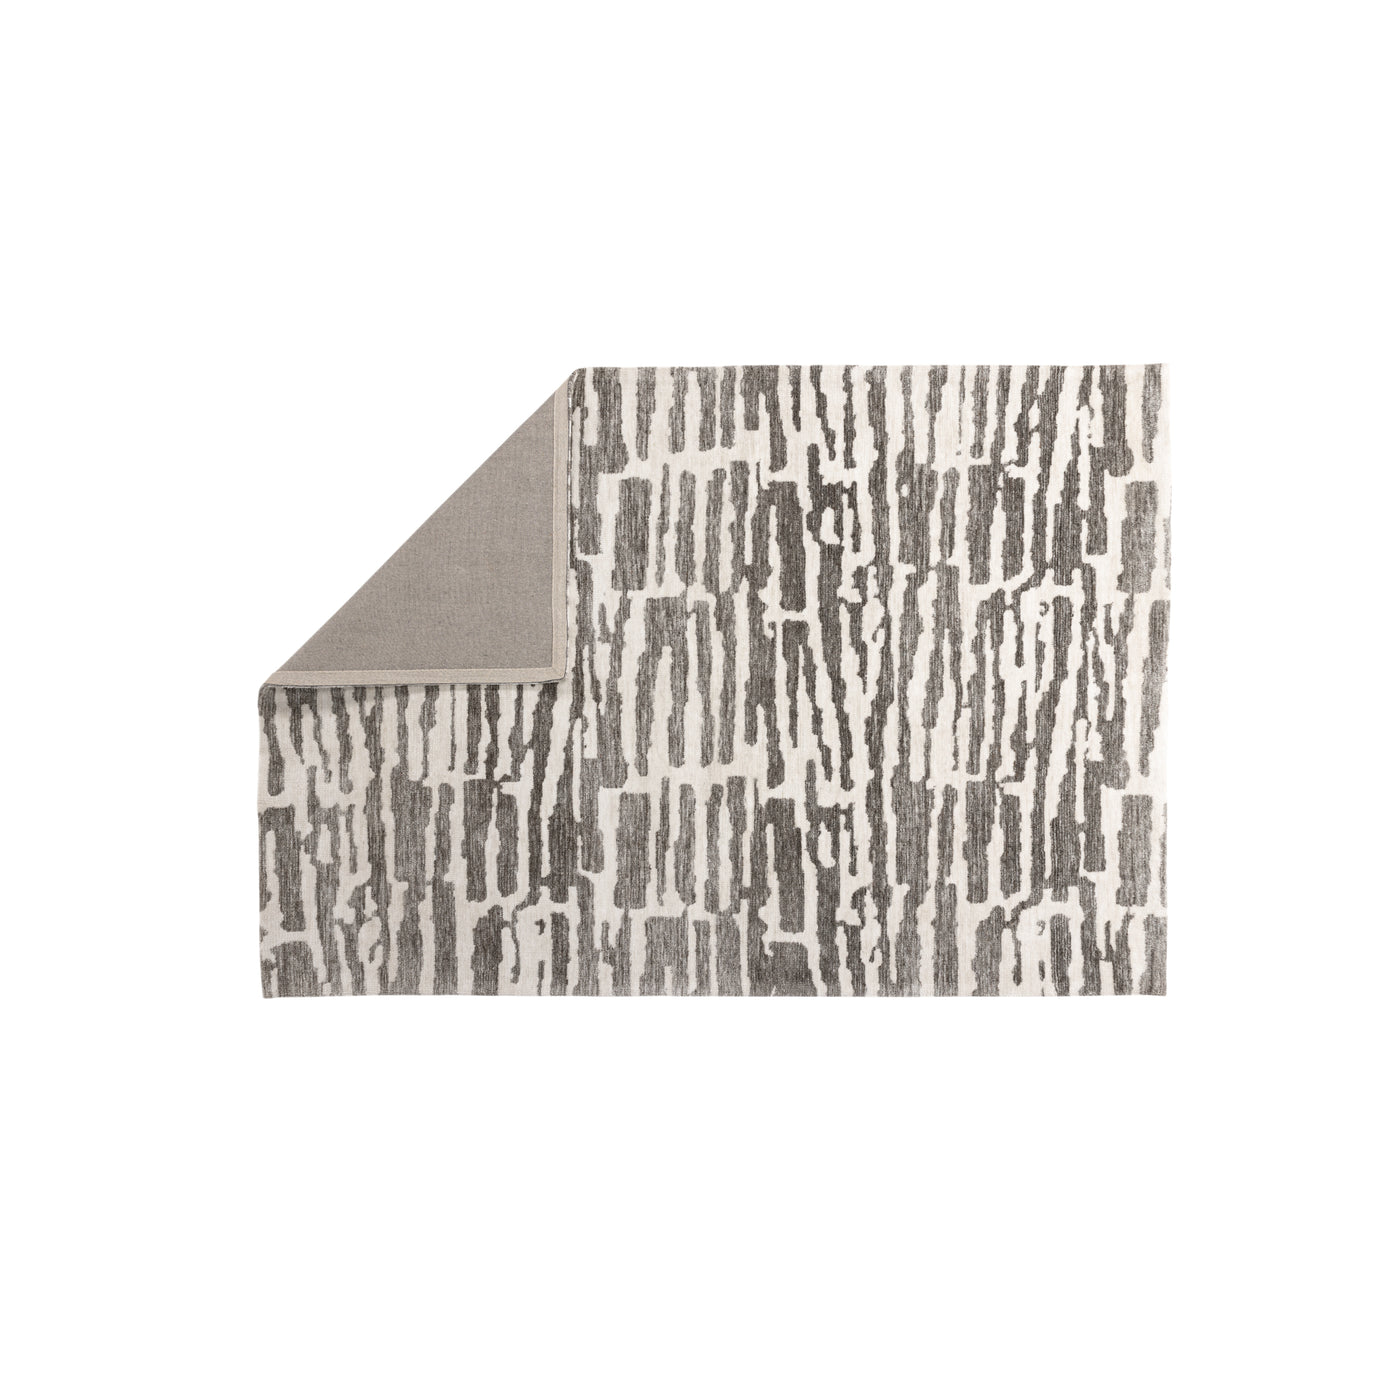 Midori Micropolyester – 395 x 295 – rechteckig – Weiß/Grau